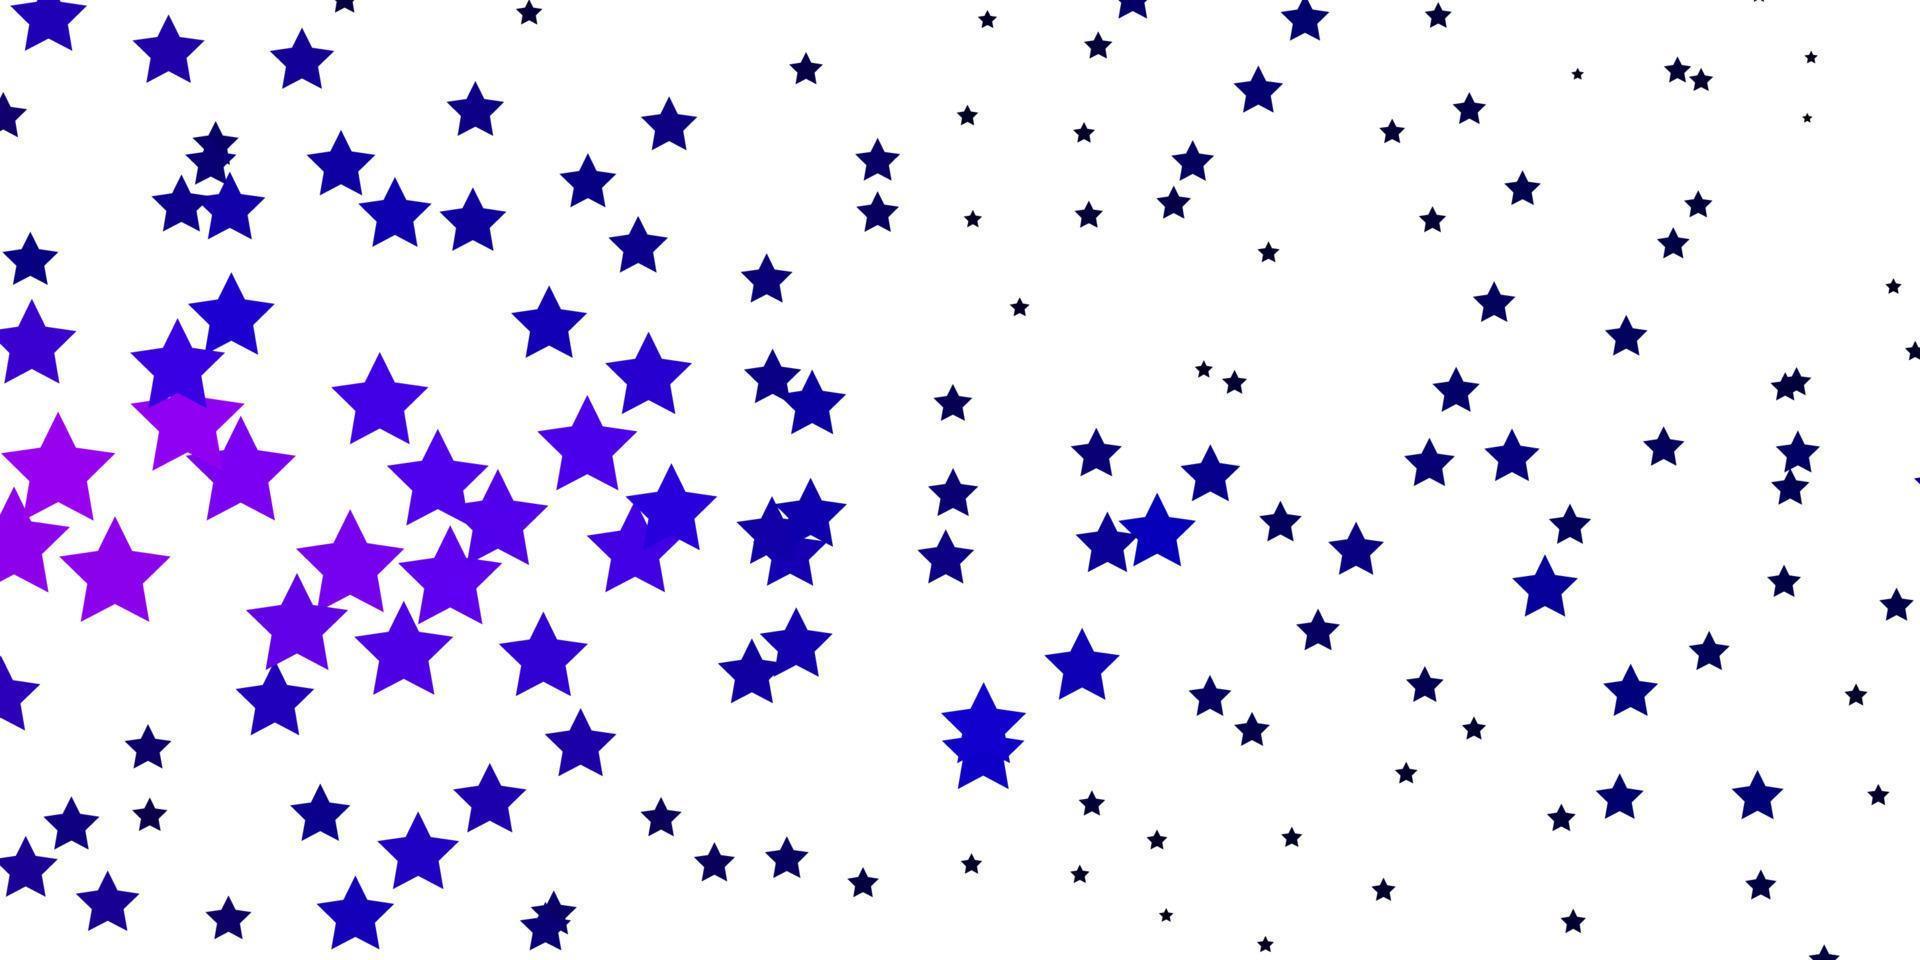 fond de vecteur rose et bleu foncé avec de petites et grandes étoiles.